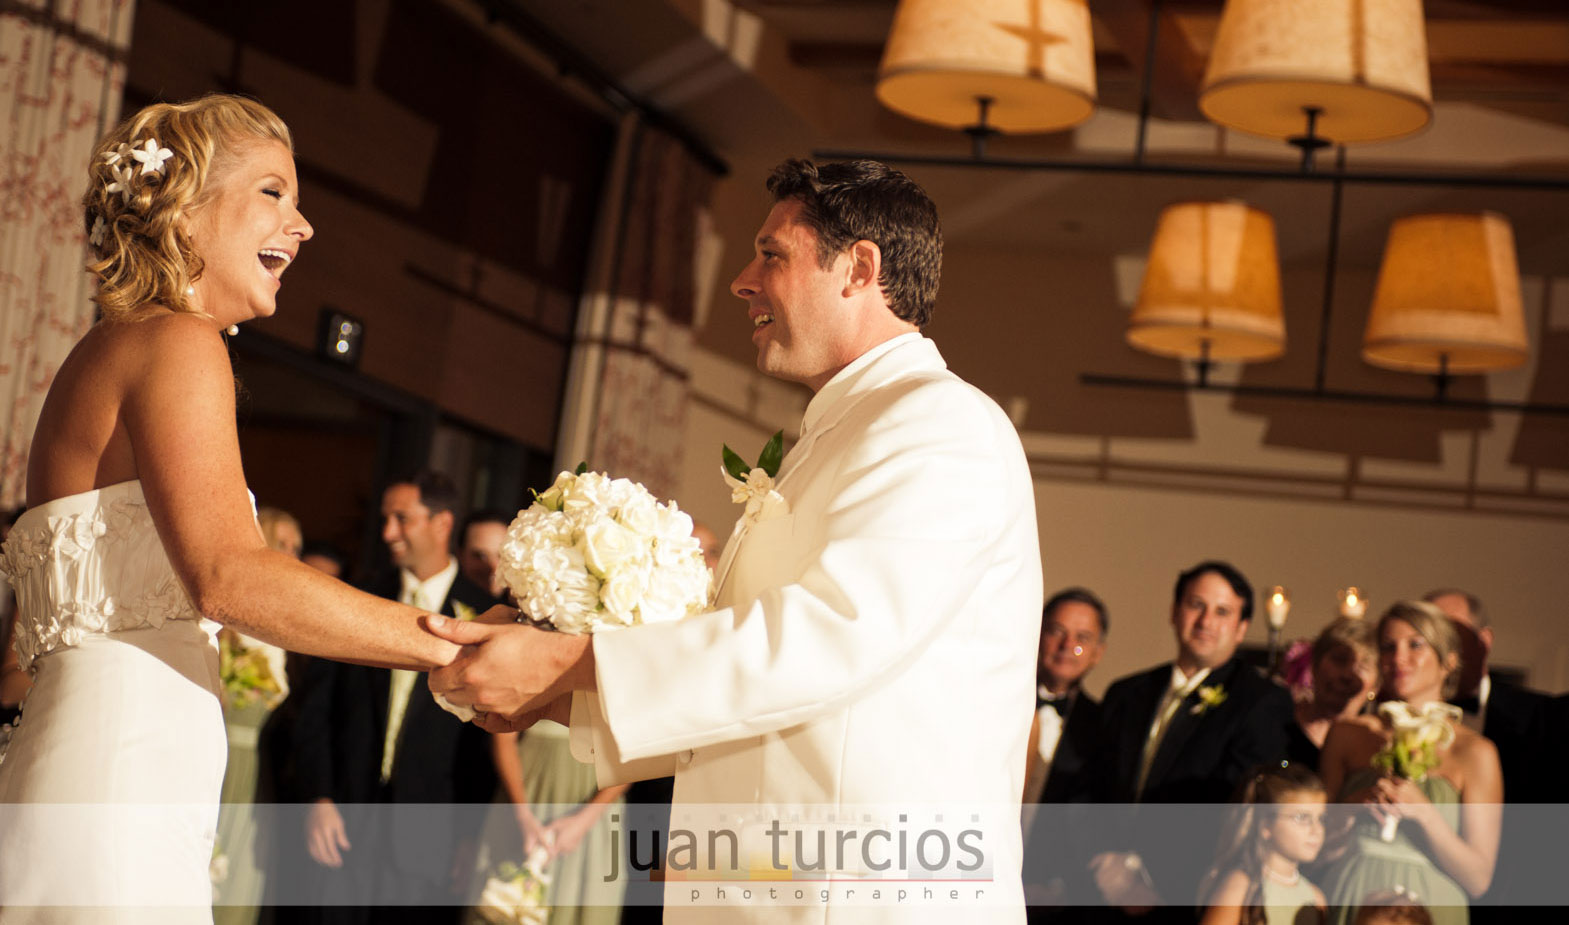 Dawn+Tommy’s Palos Verdes Wedding featured slider image